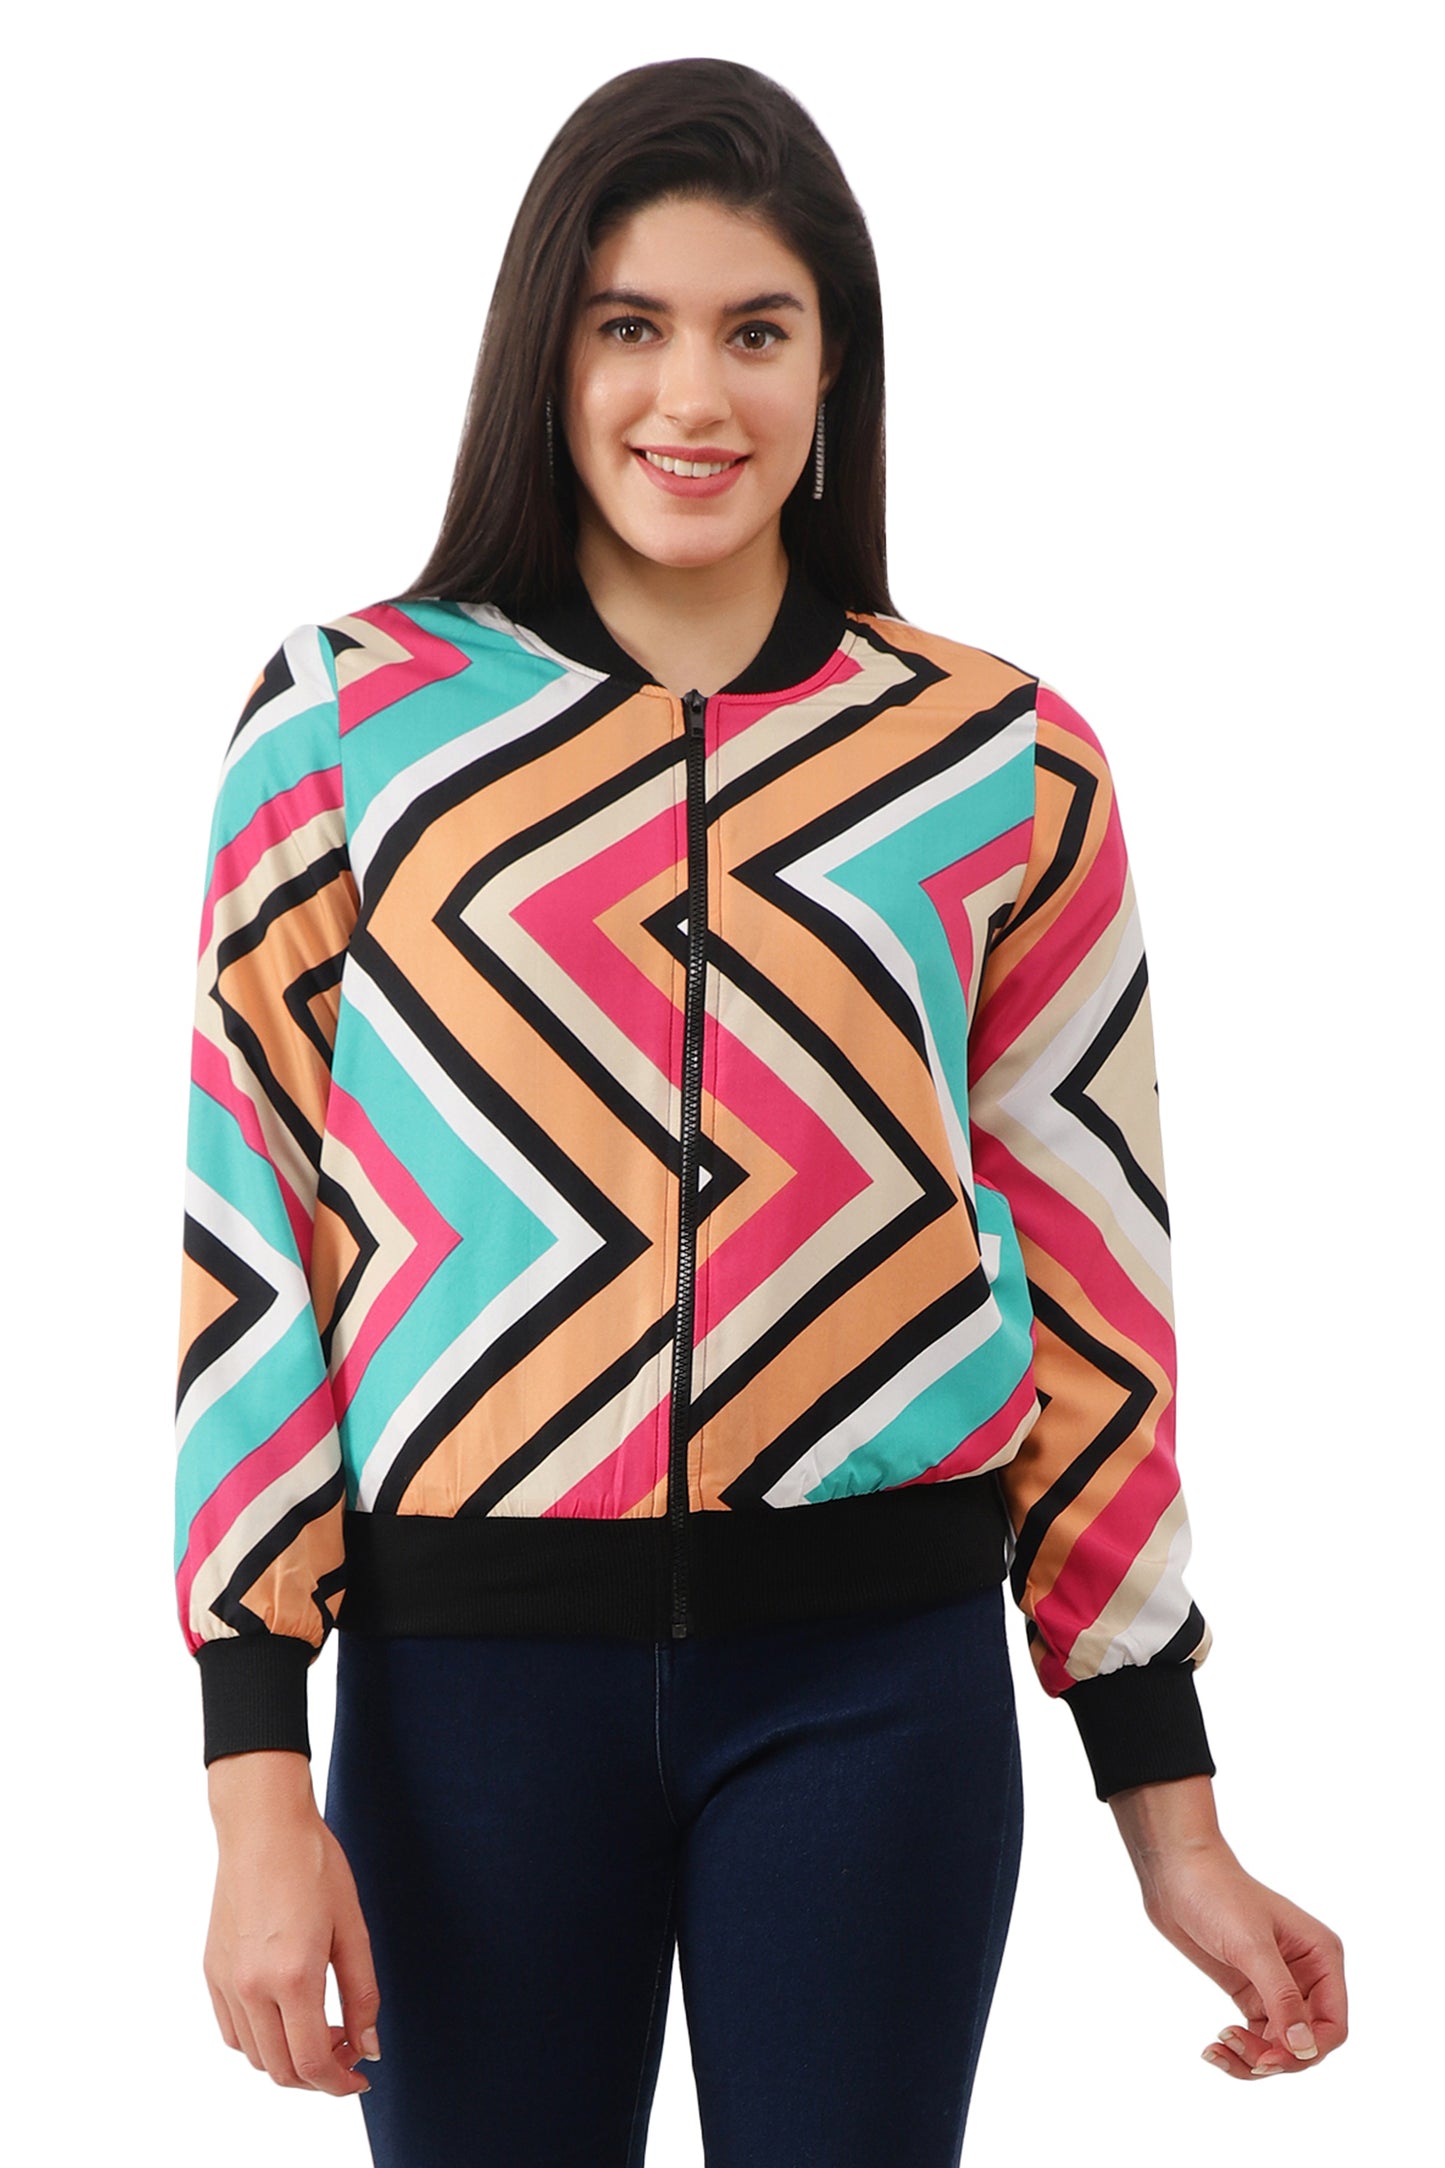 NUEVOSDAMAS Women Printed Full Sleeve Bomber jacket | Latest Stylish Chevron Printed Women Jacket | Light Weight Crepe Jacket for women_multicolor